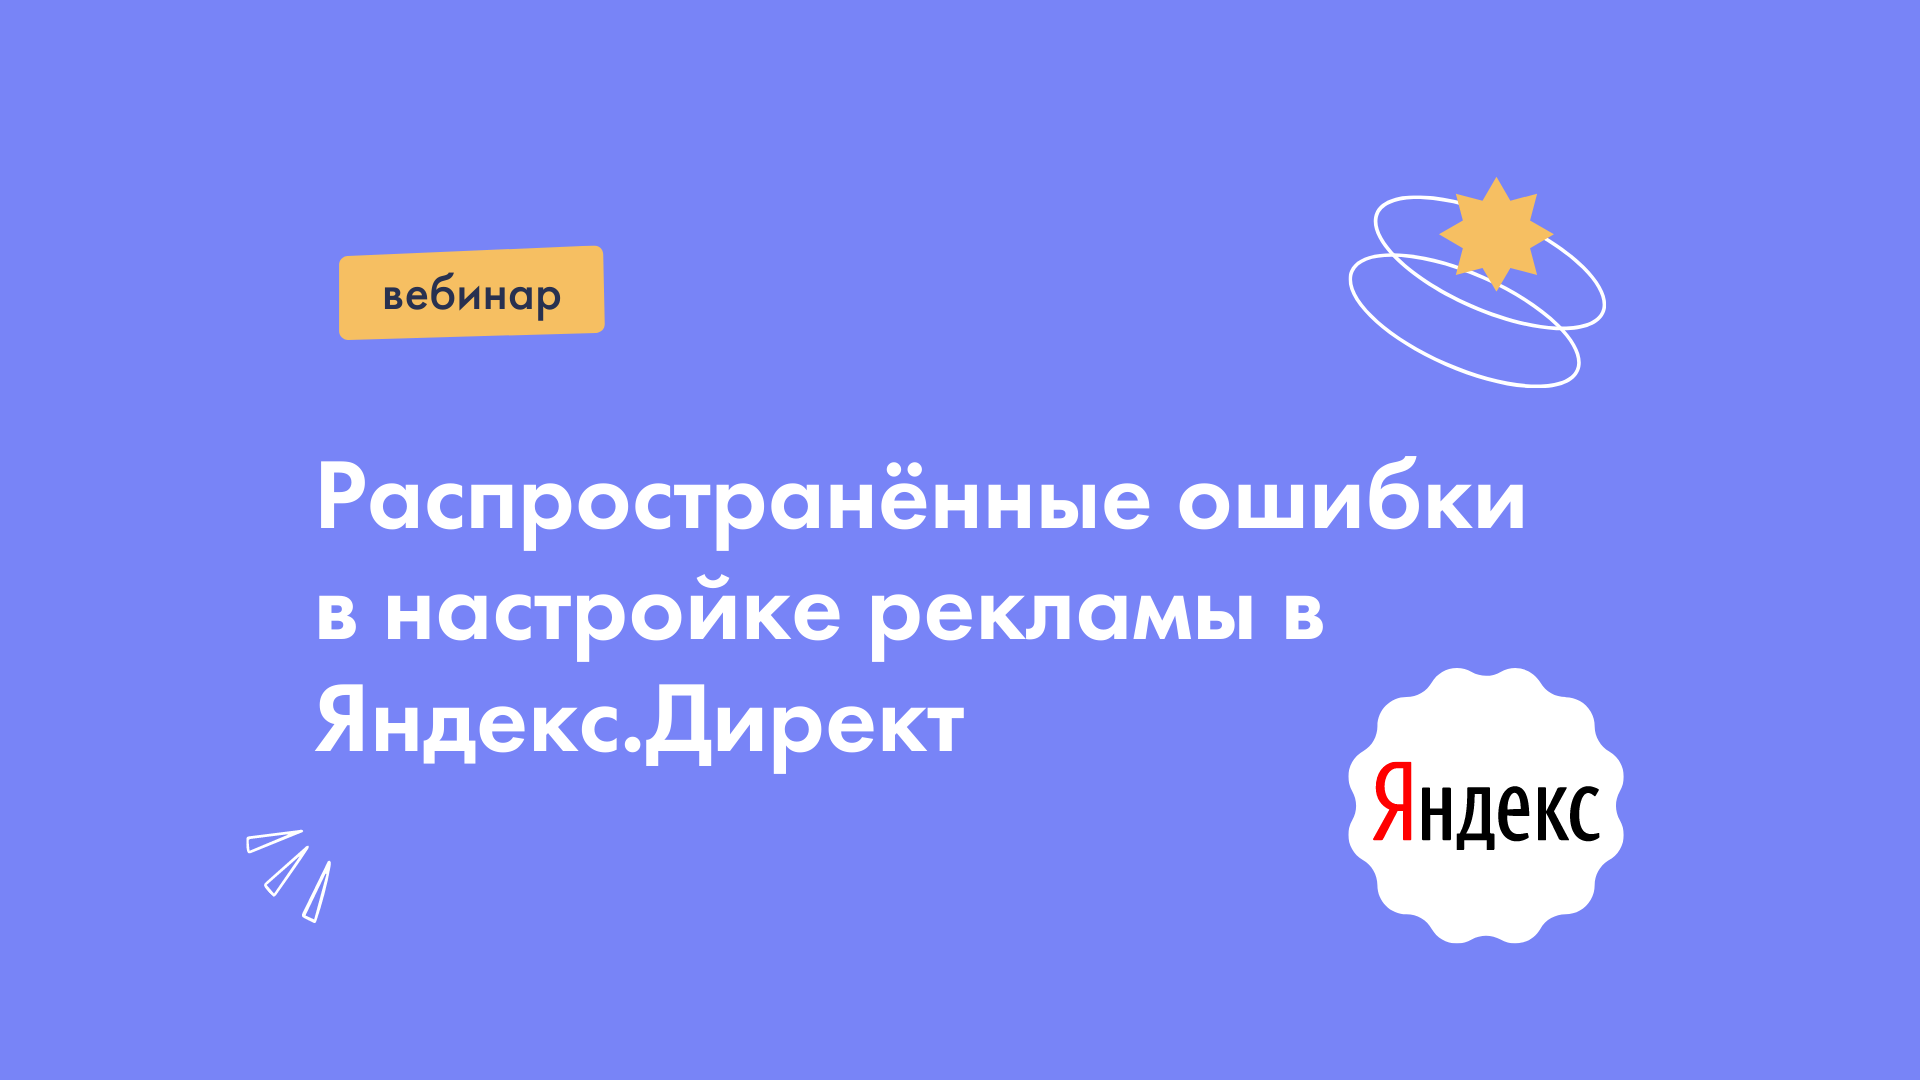 Распространённые ошибки в настройке рекламы в Яндекс.Директ